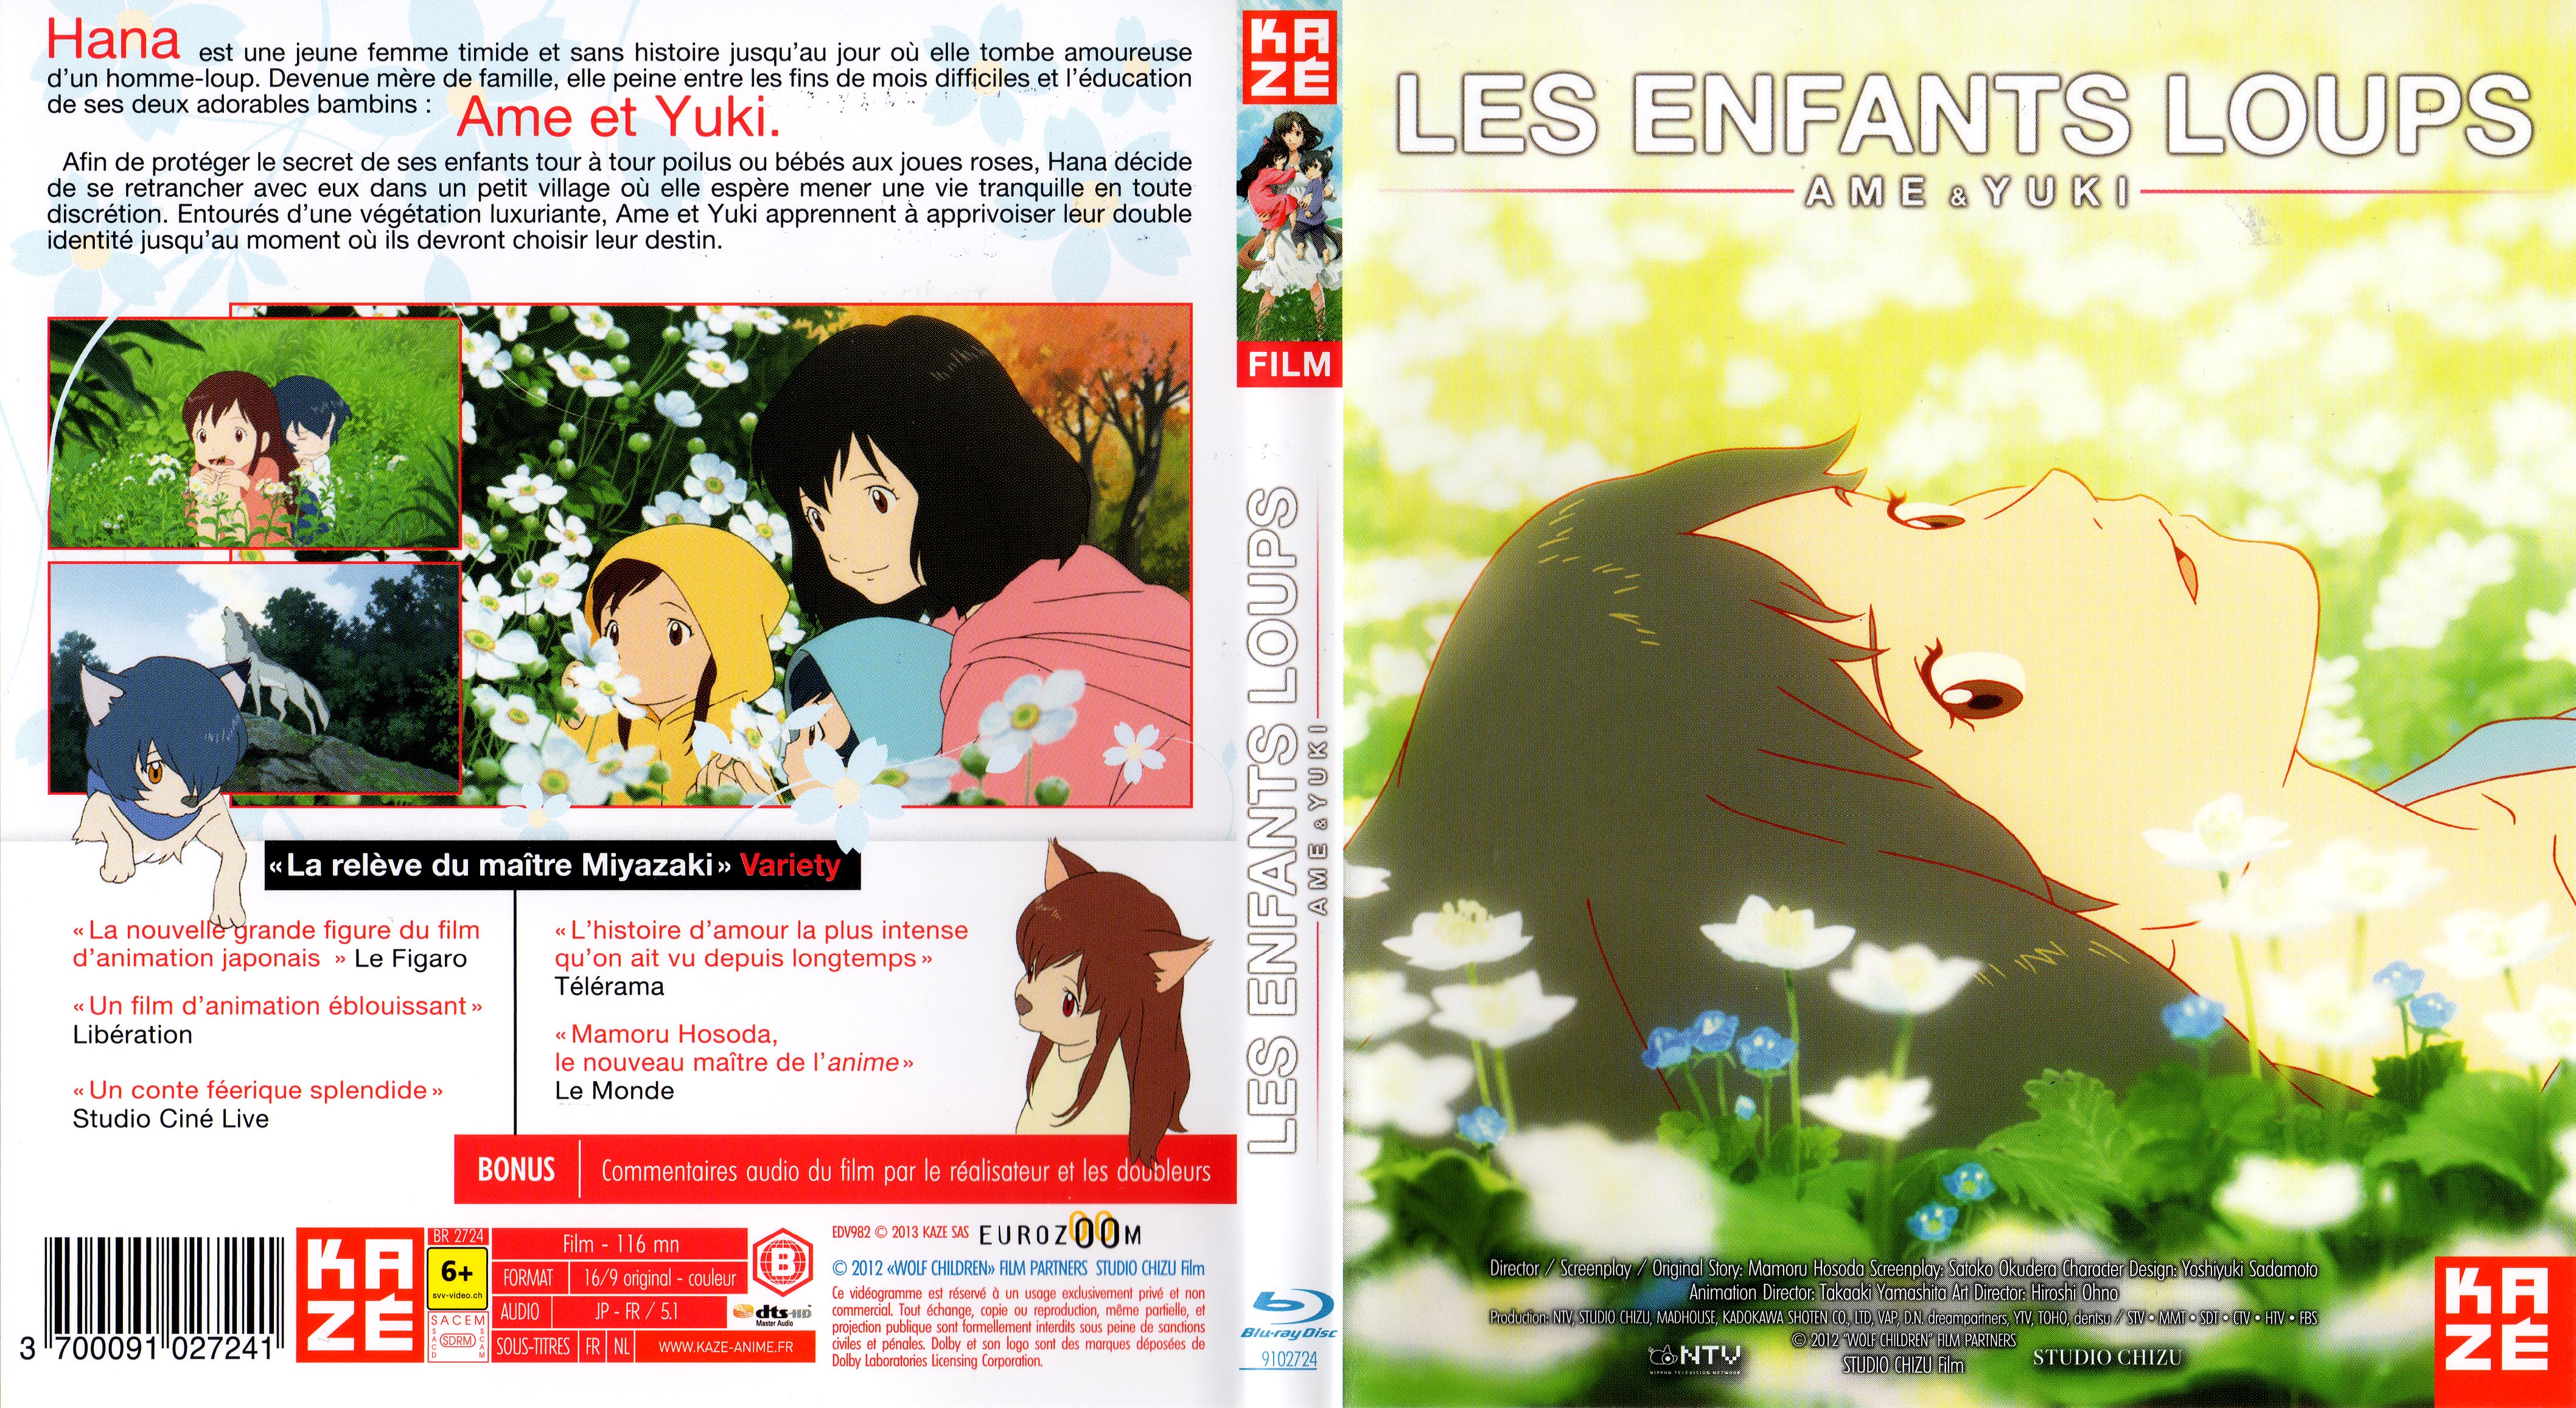 Jaquette DVD Les Enfants Loups, Ame & Yuki (BLU-RAY)